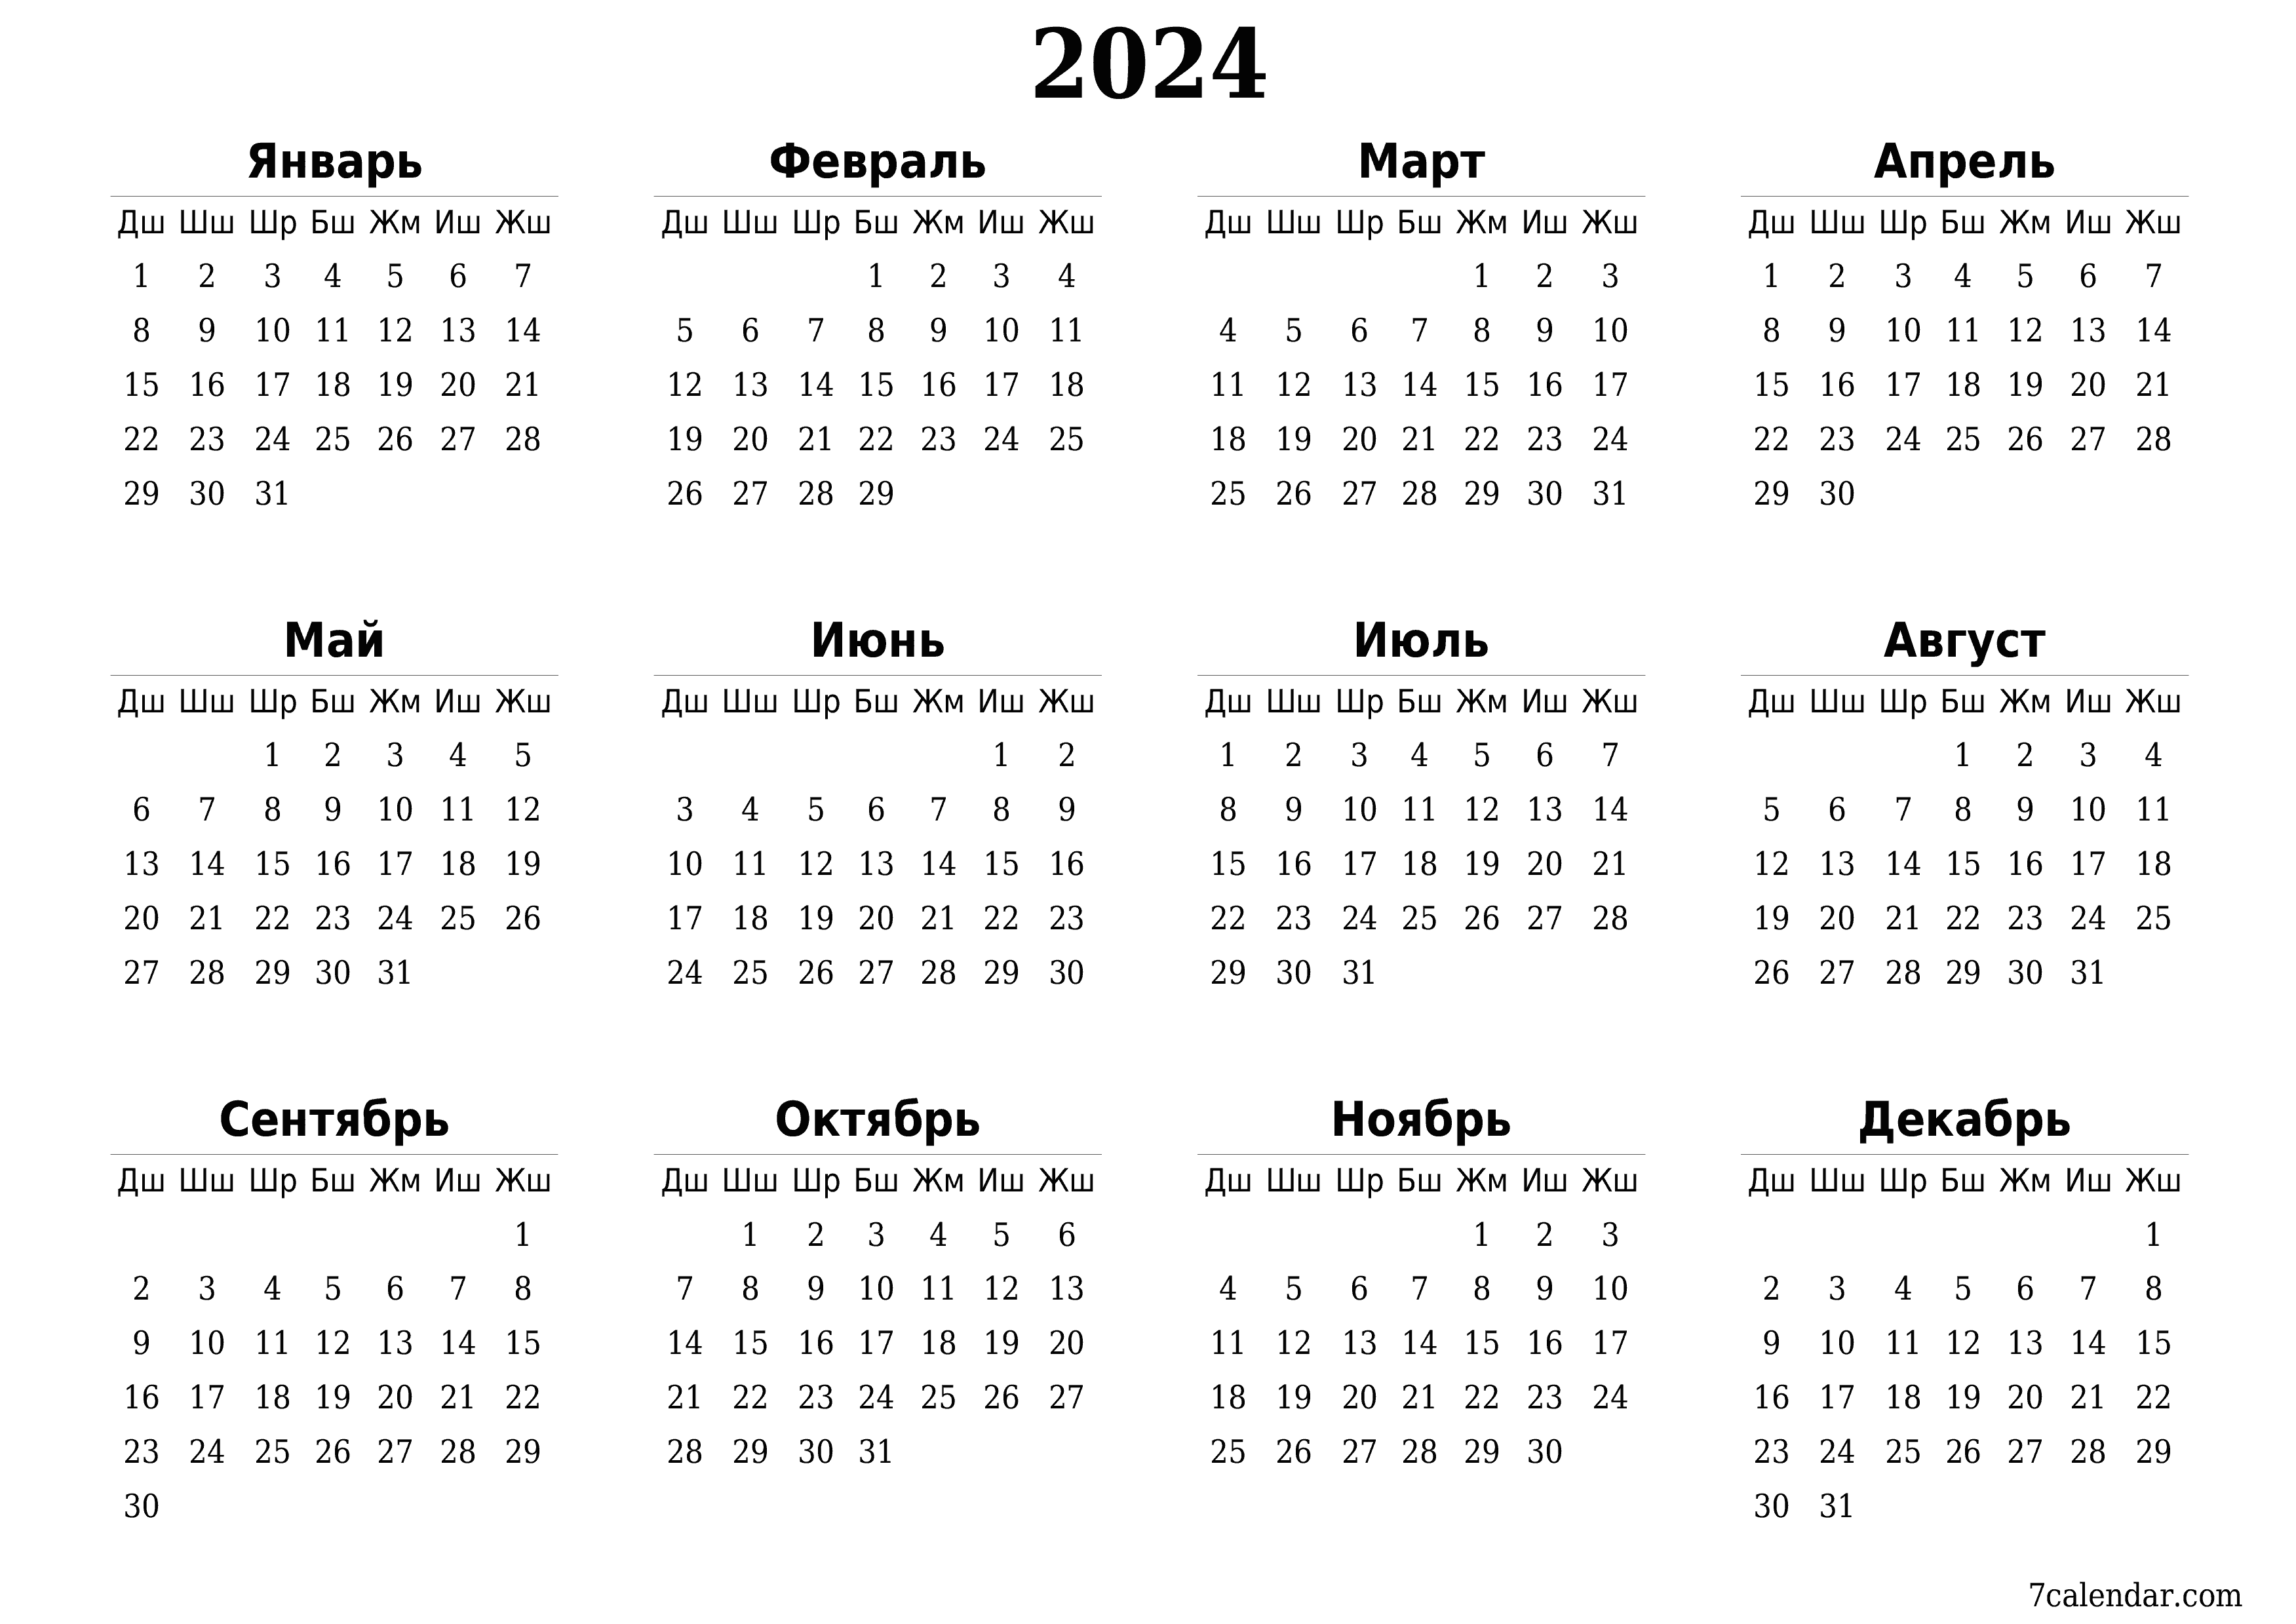 басма ь дубал ы шаблон акысыз ьгоризонталдуу Жыл сайын календар Бугу (Май) 2024